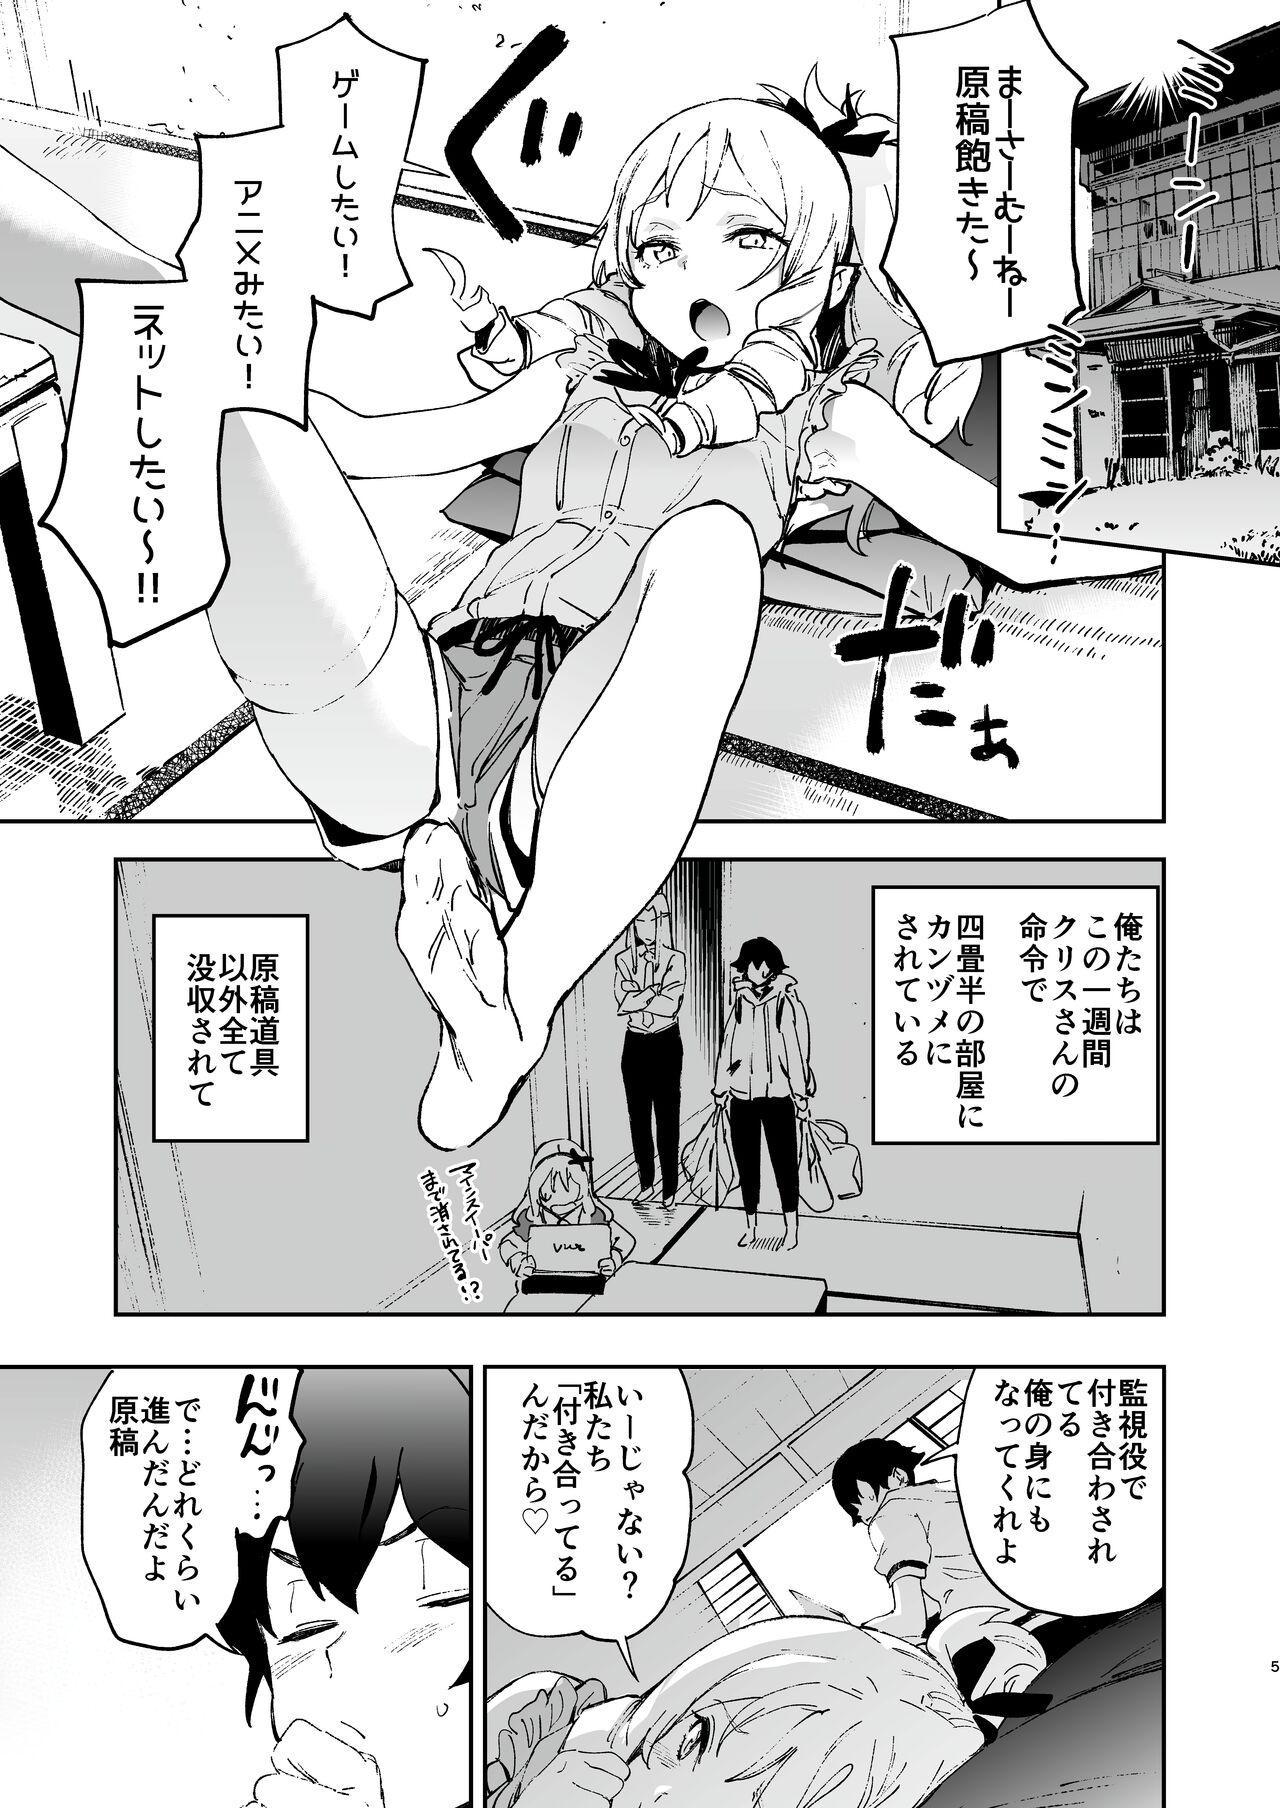 Softcore Yamada Elf-sensei no Yaruki SEX Fire - Eromanga sensei Dancing - Page 4